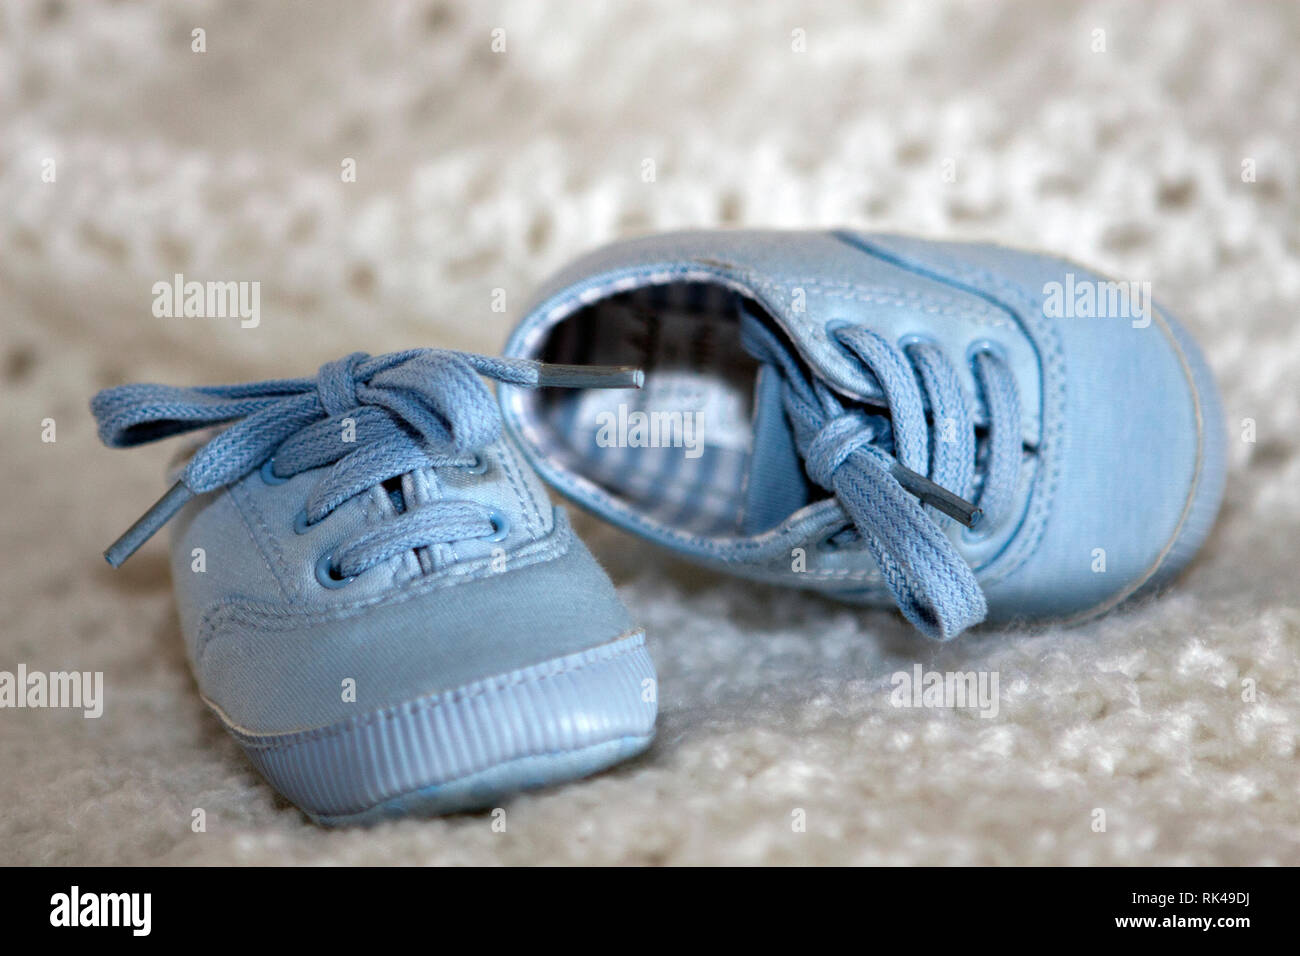 boys blue shoes